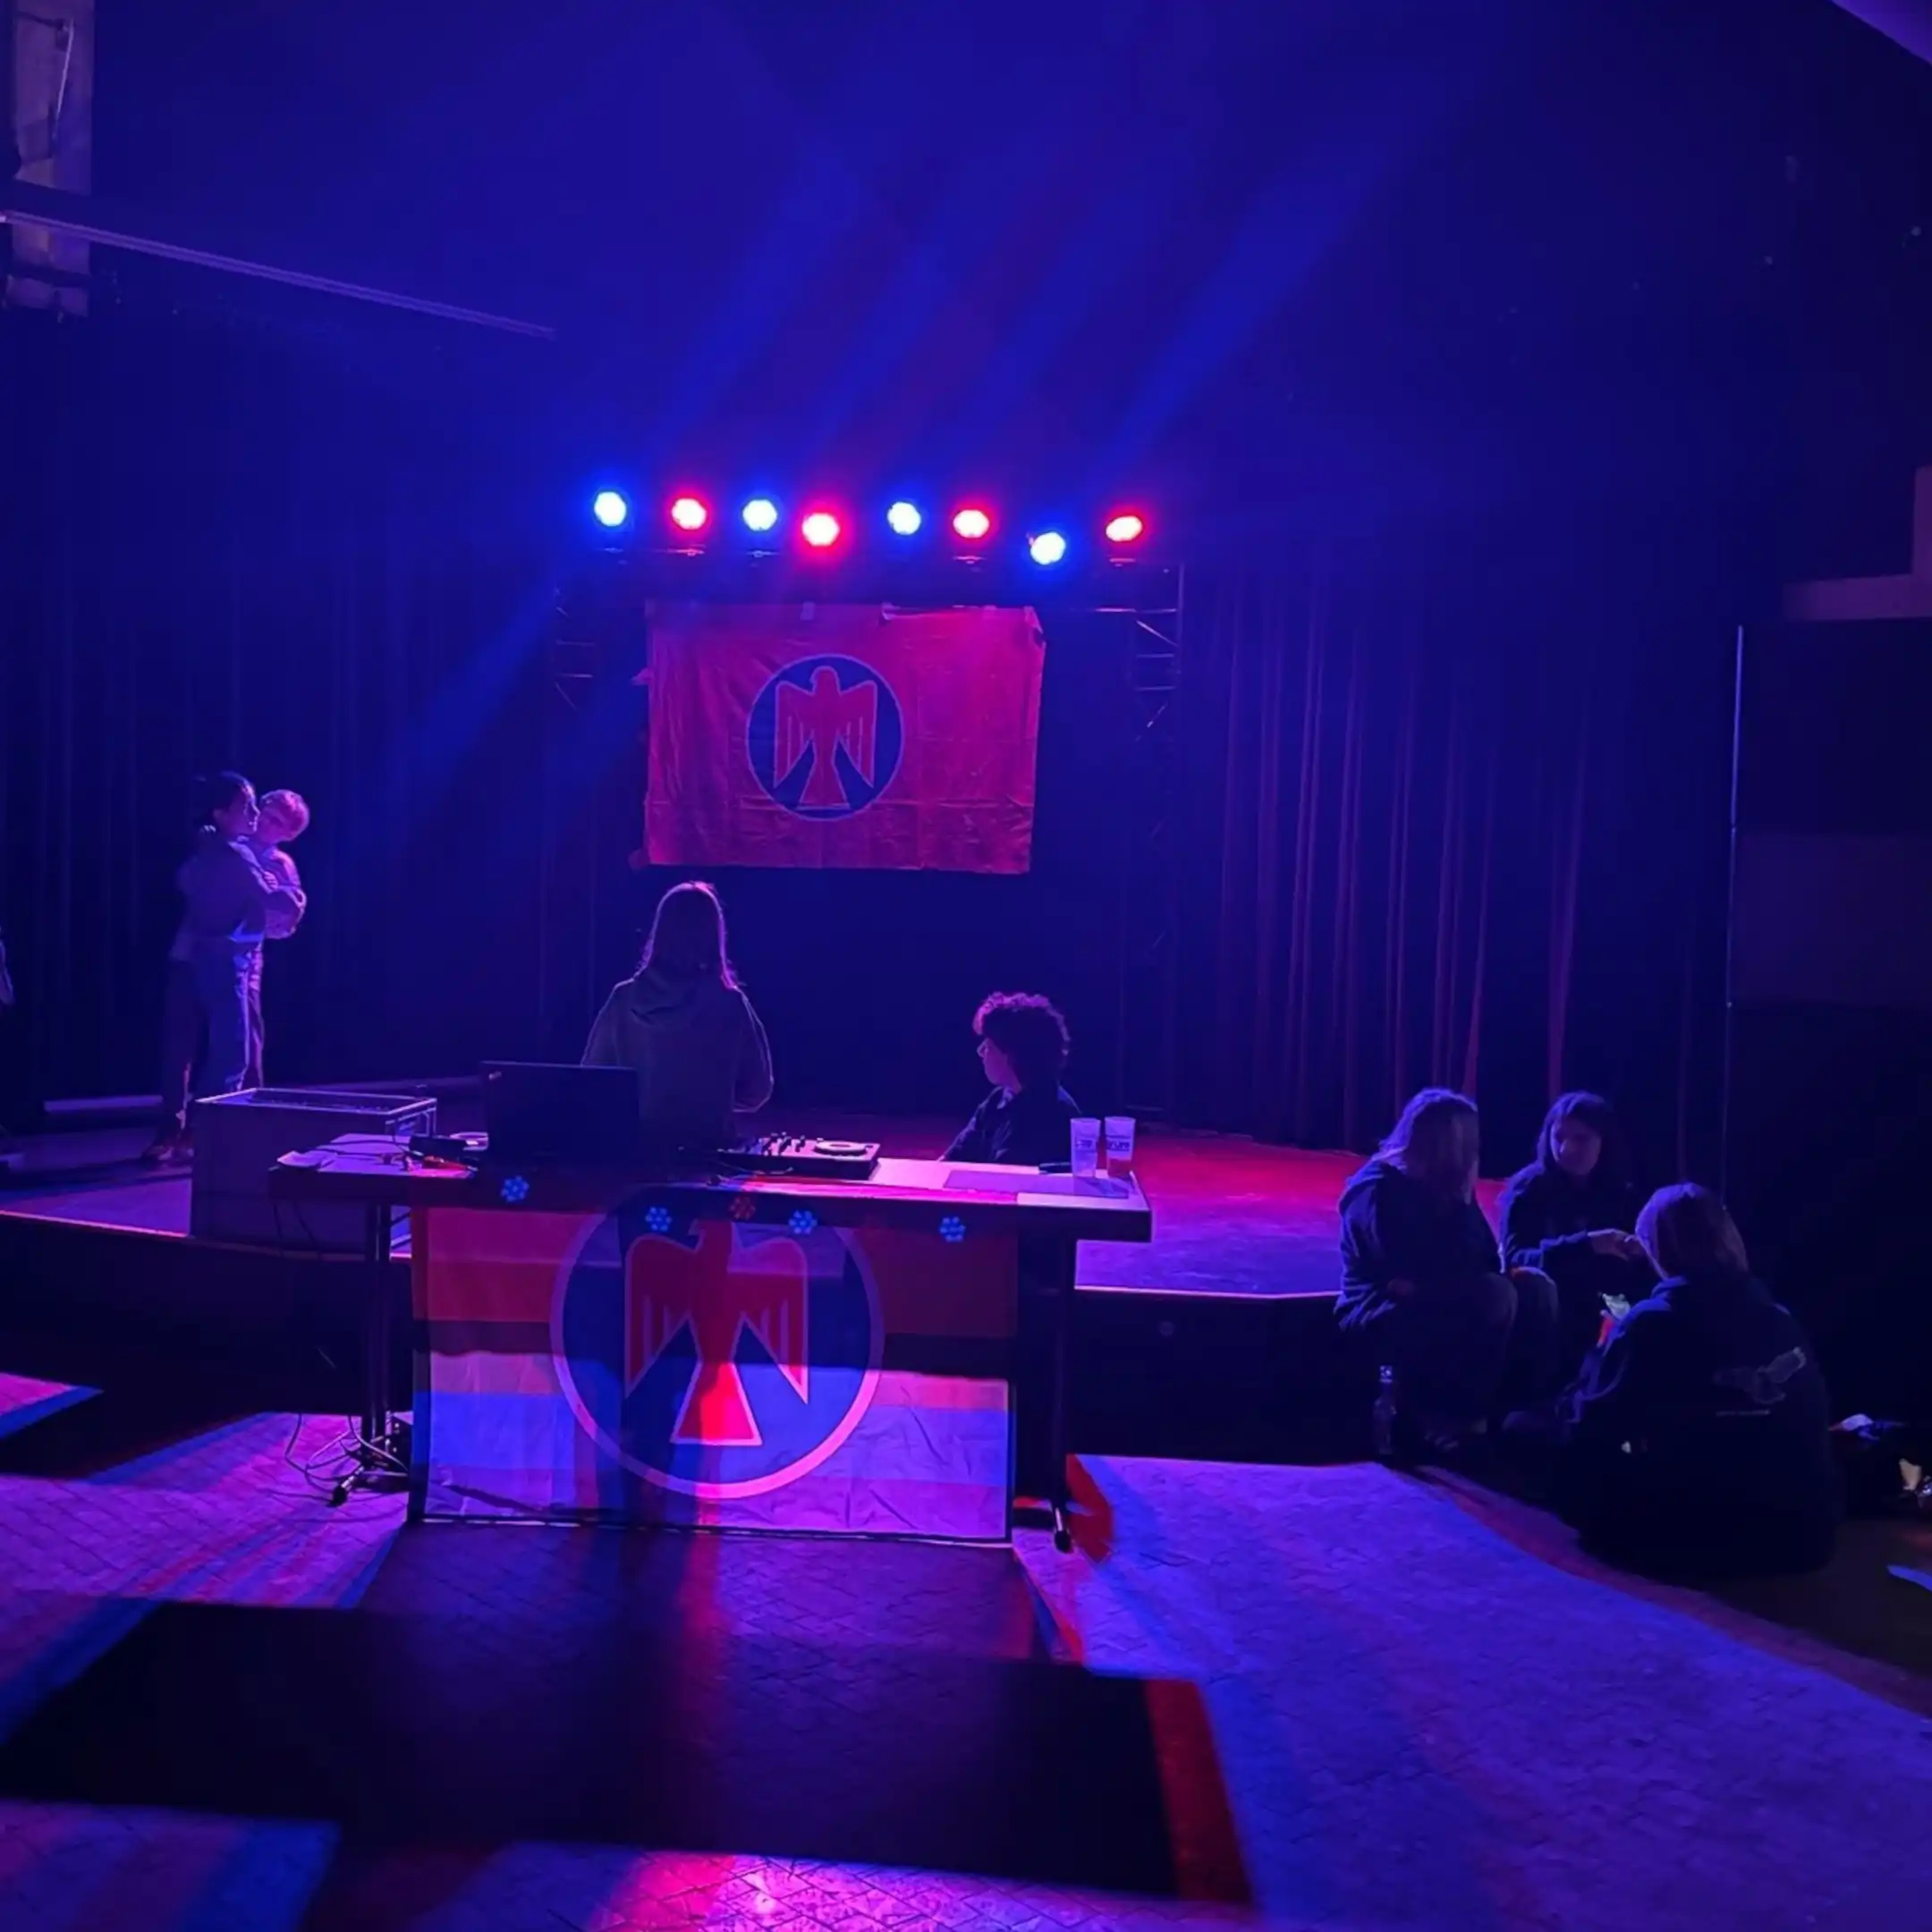 Im Vordergrund steht ein Tisch mit Falkenfahne in Regenbogenfarben geschmückt. Auf diesem stehen Laptop und DJ-Console. Dahinter stehen zwei Personen. Hinter dem DJ-Pult ist die Bühne auf der ein Paar tanzt. Rechts der Bühne sitzt eine Gruppe von drei Personen am Boden